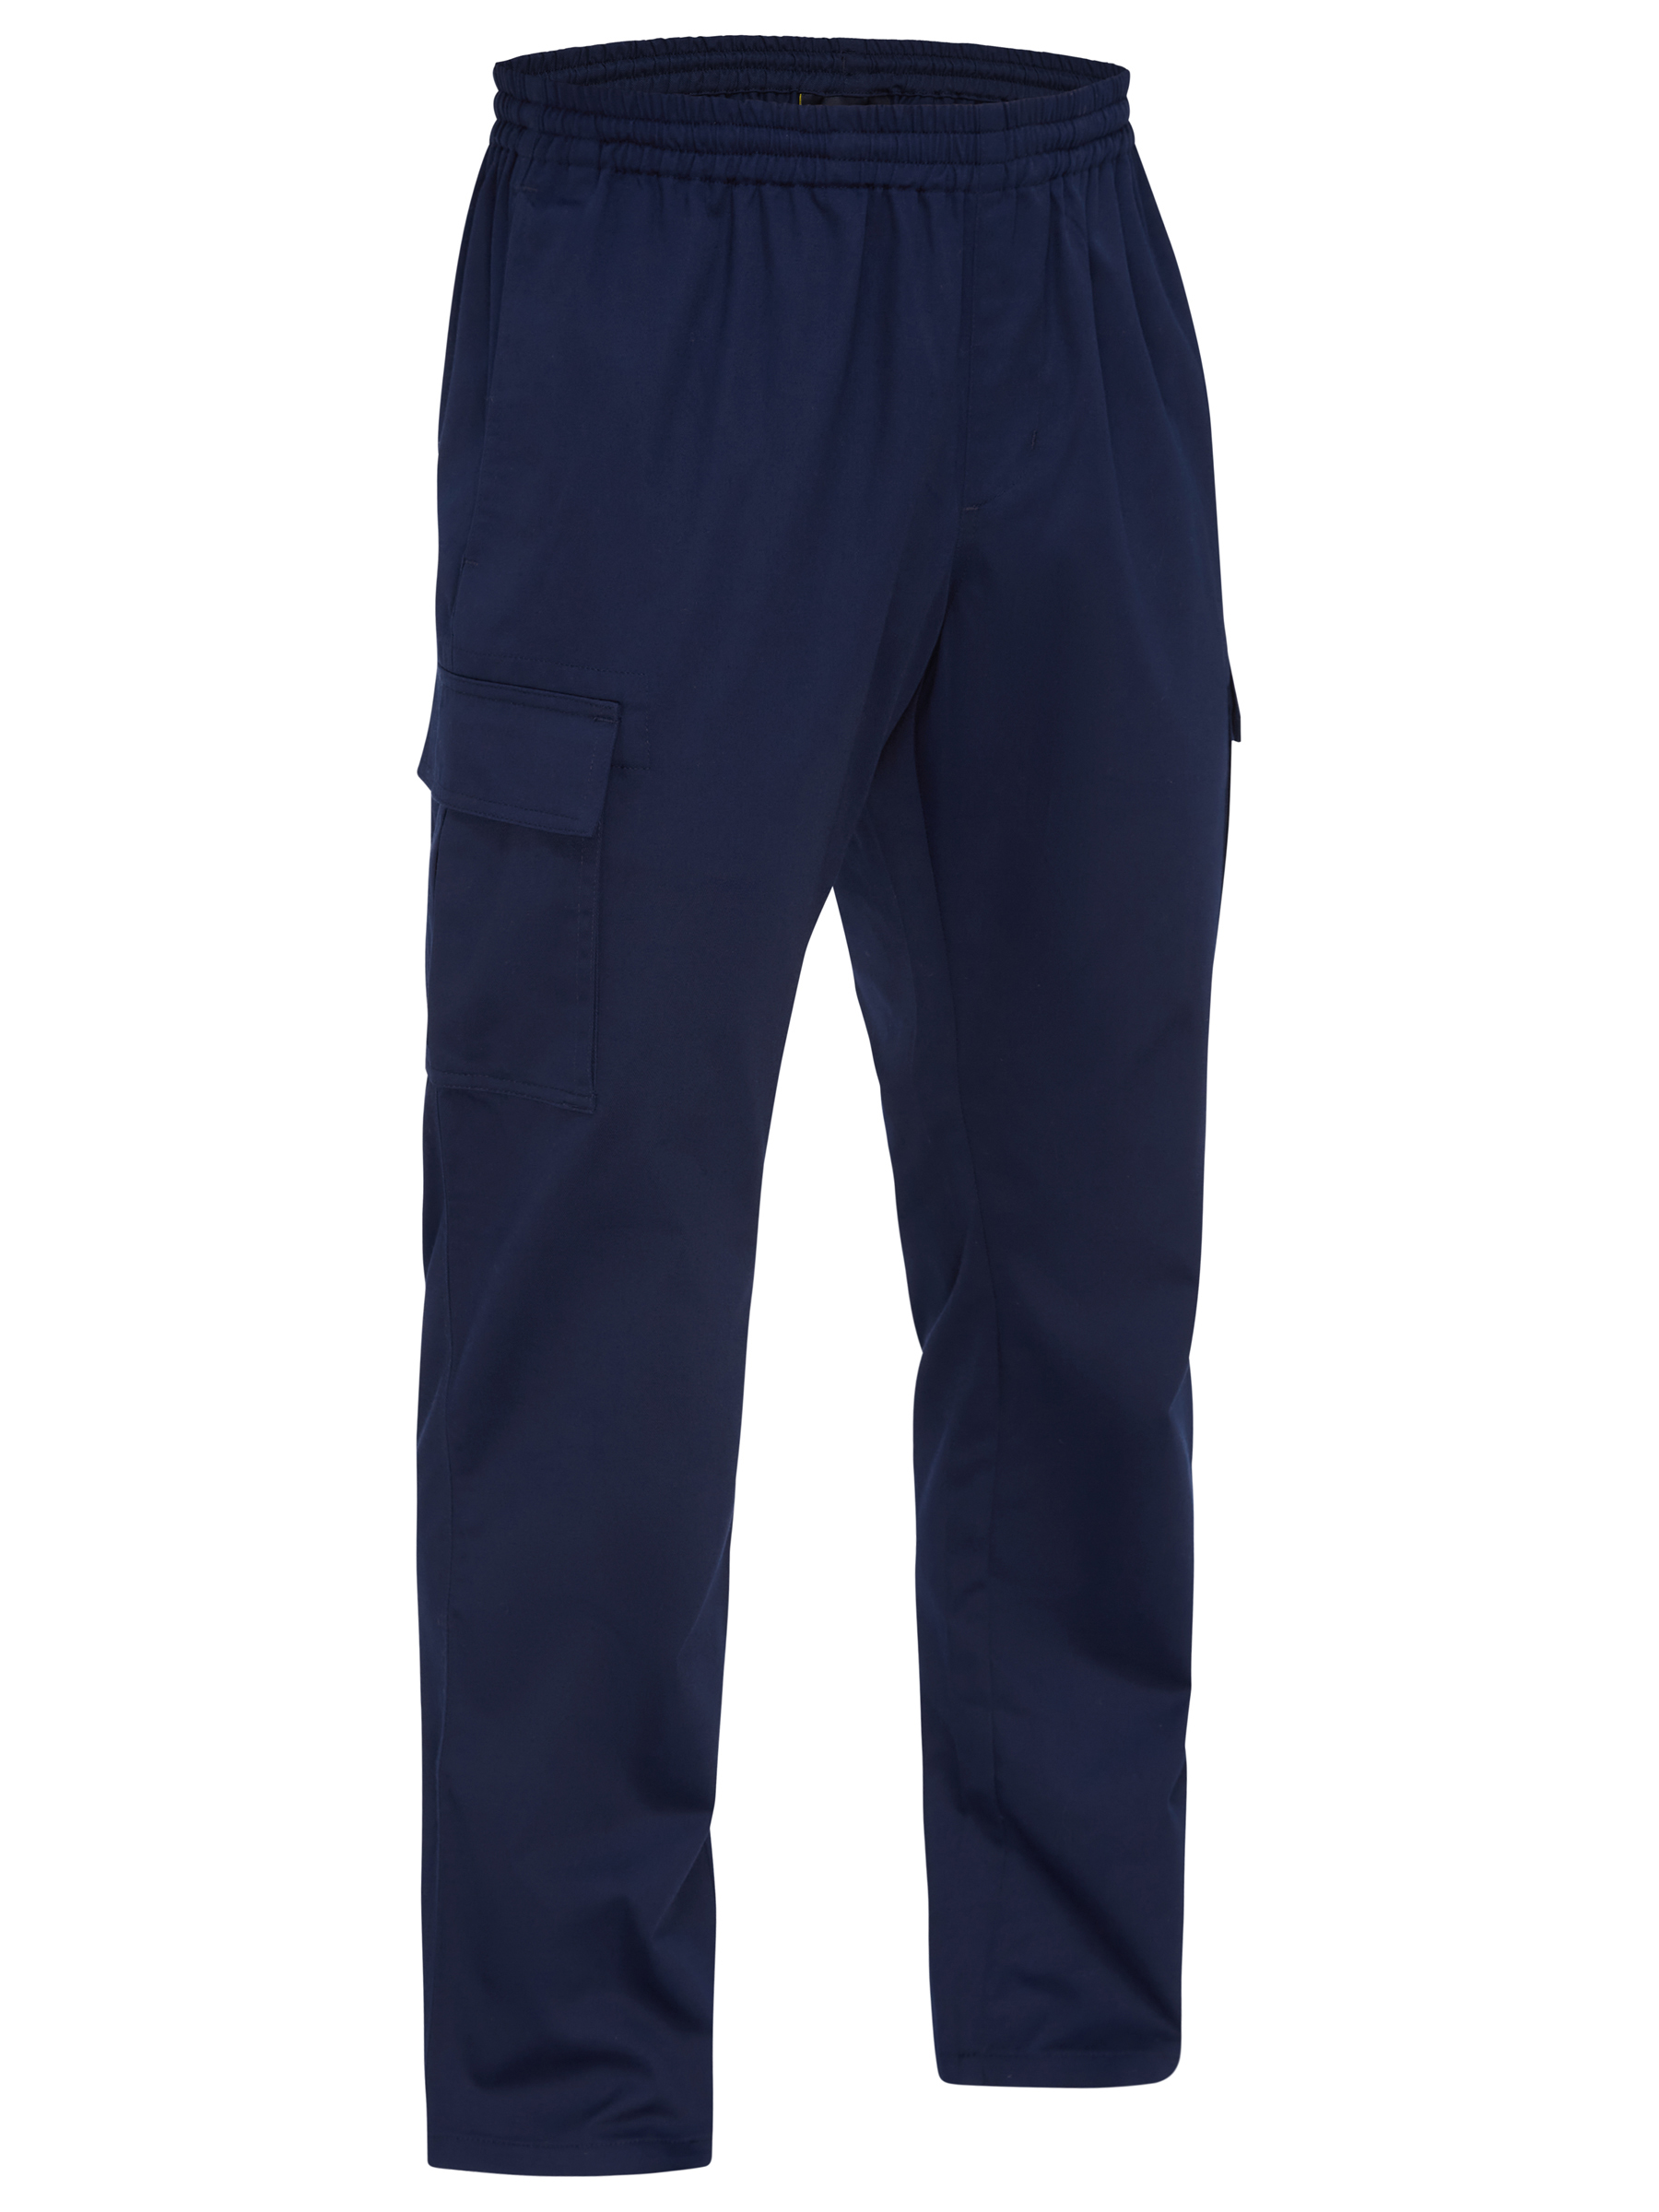 Buy Dickies Balance Men's Elastic Waist Cargo Scrub Pants-DK220 - Dickies  Online at Best price - FL